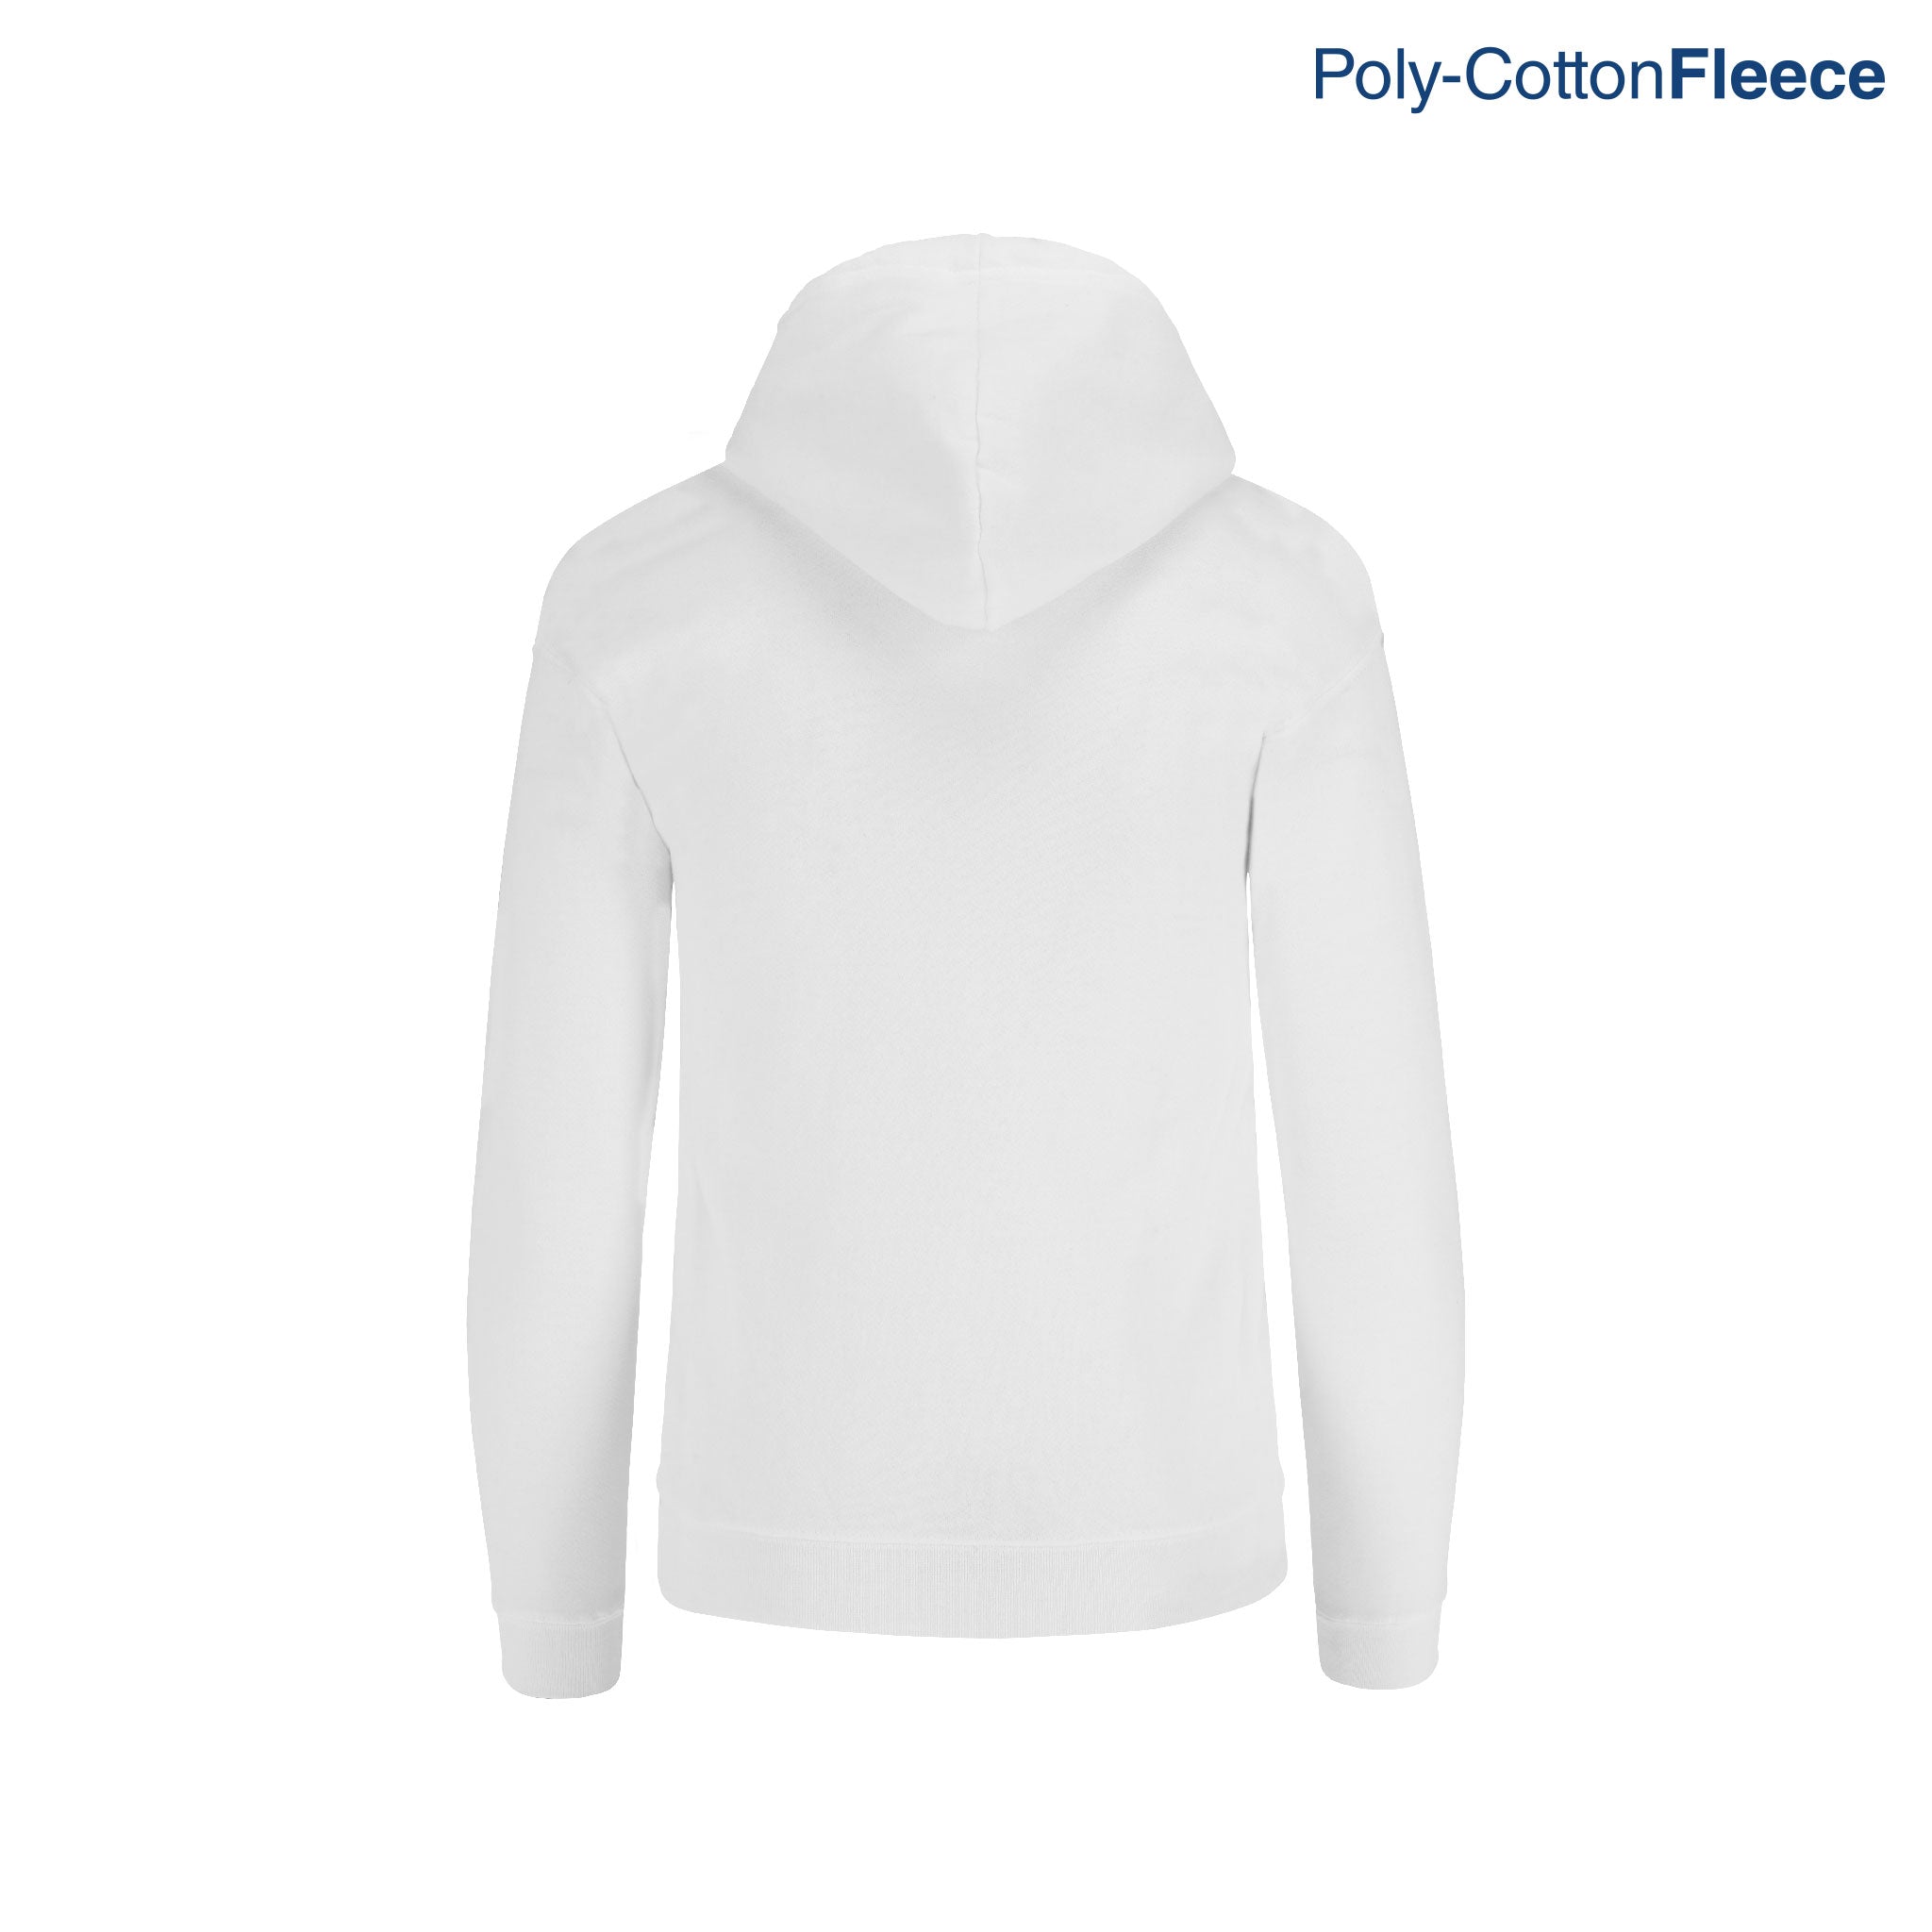 Adult's Unisex Full Zip Hooded Sweatshirt With Kangaroo Pocket 